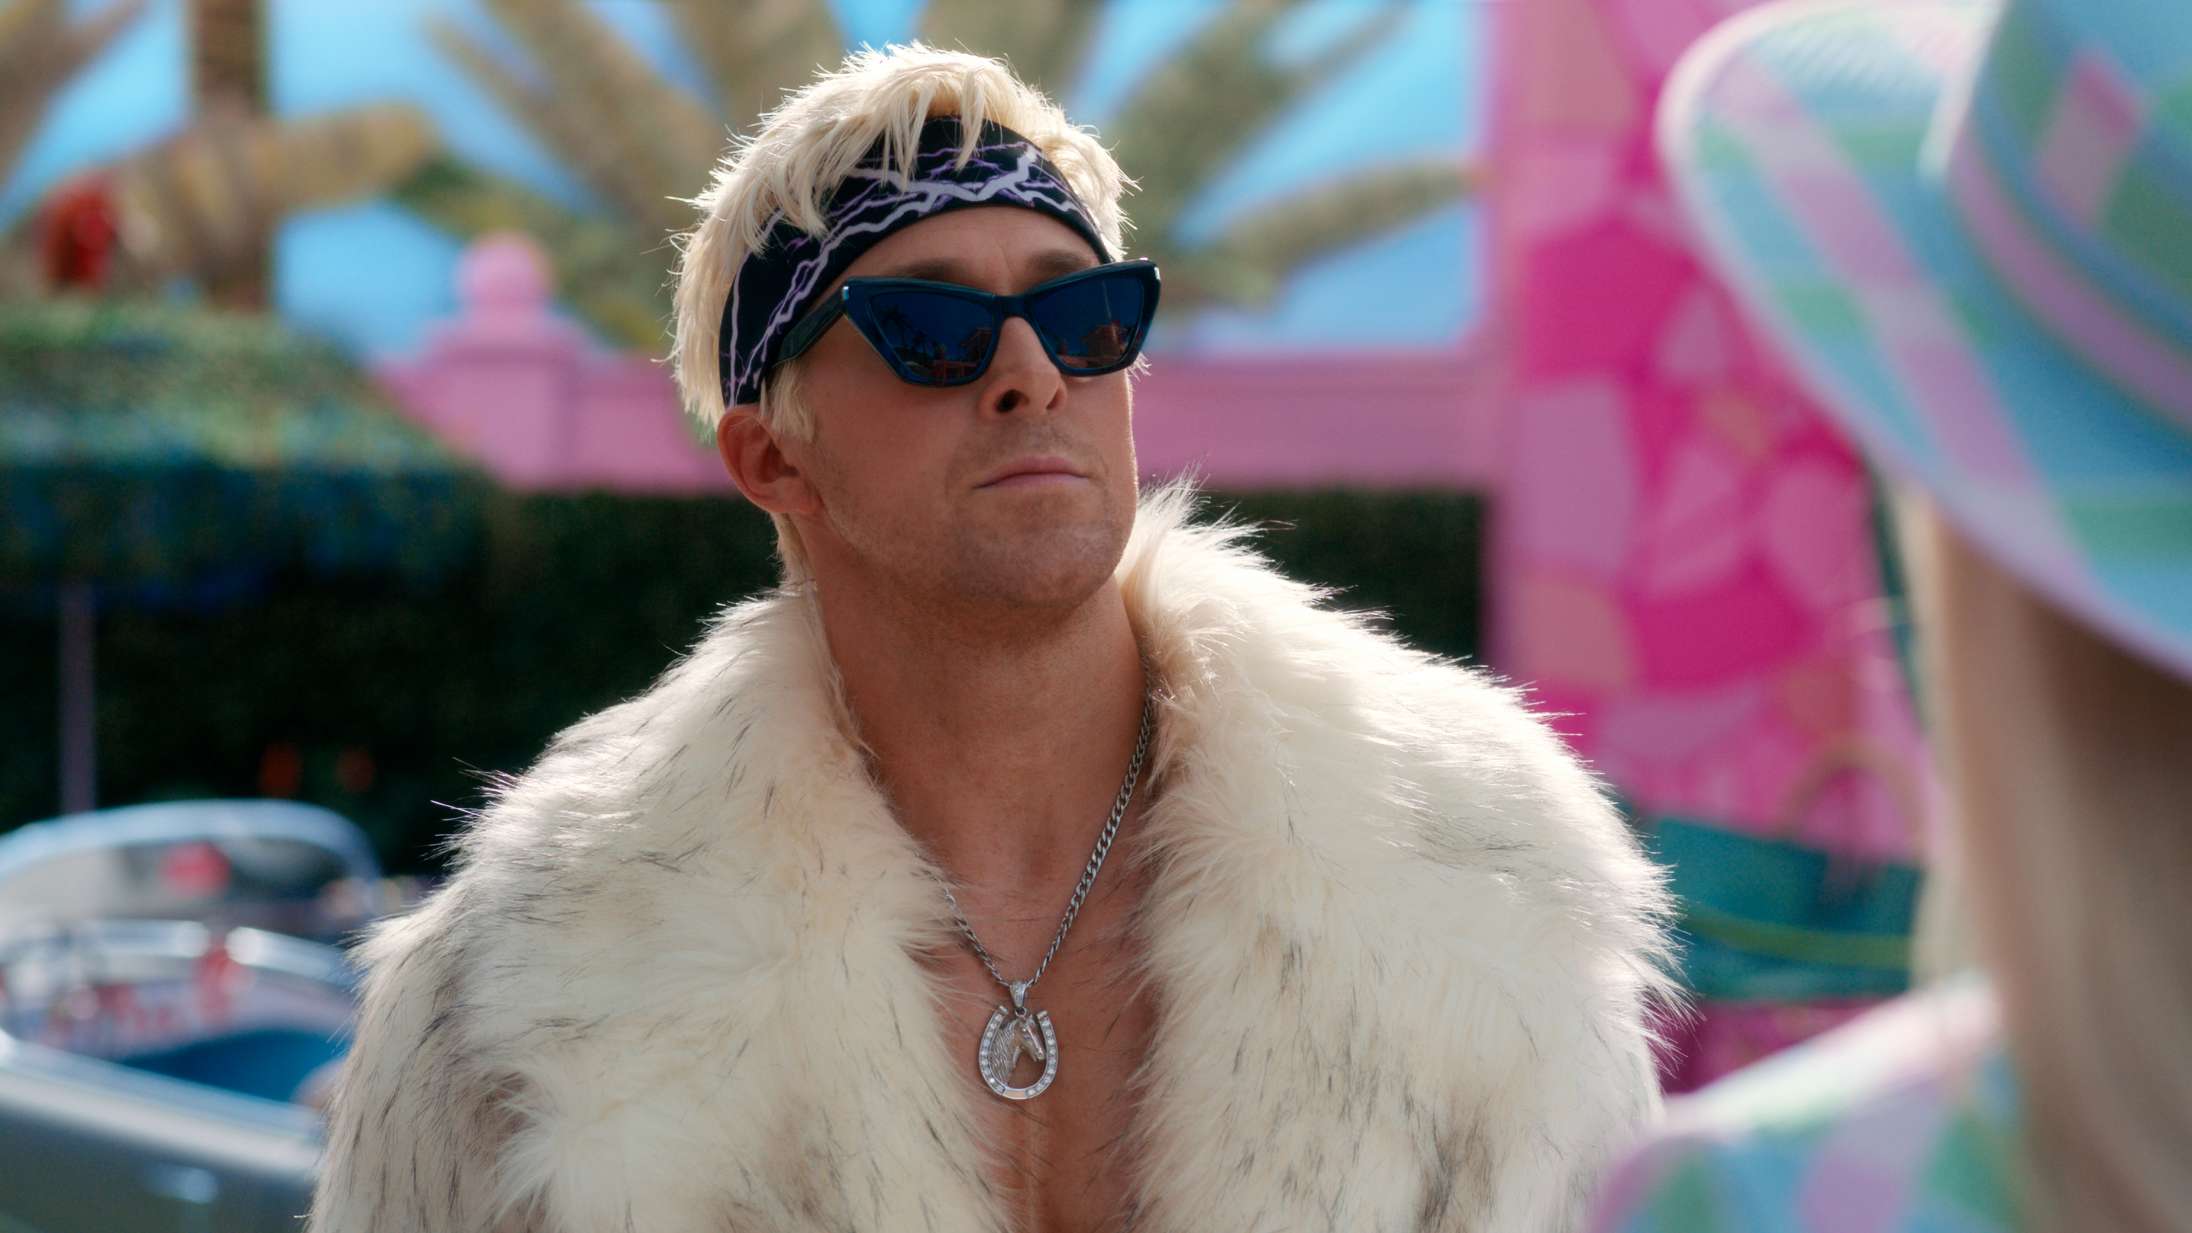 Ryan Gosling udgiver ep med jule-remix af ‘Barbie’-sangen ‘I’m Just Ken’ – se musikvideoen